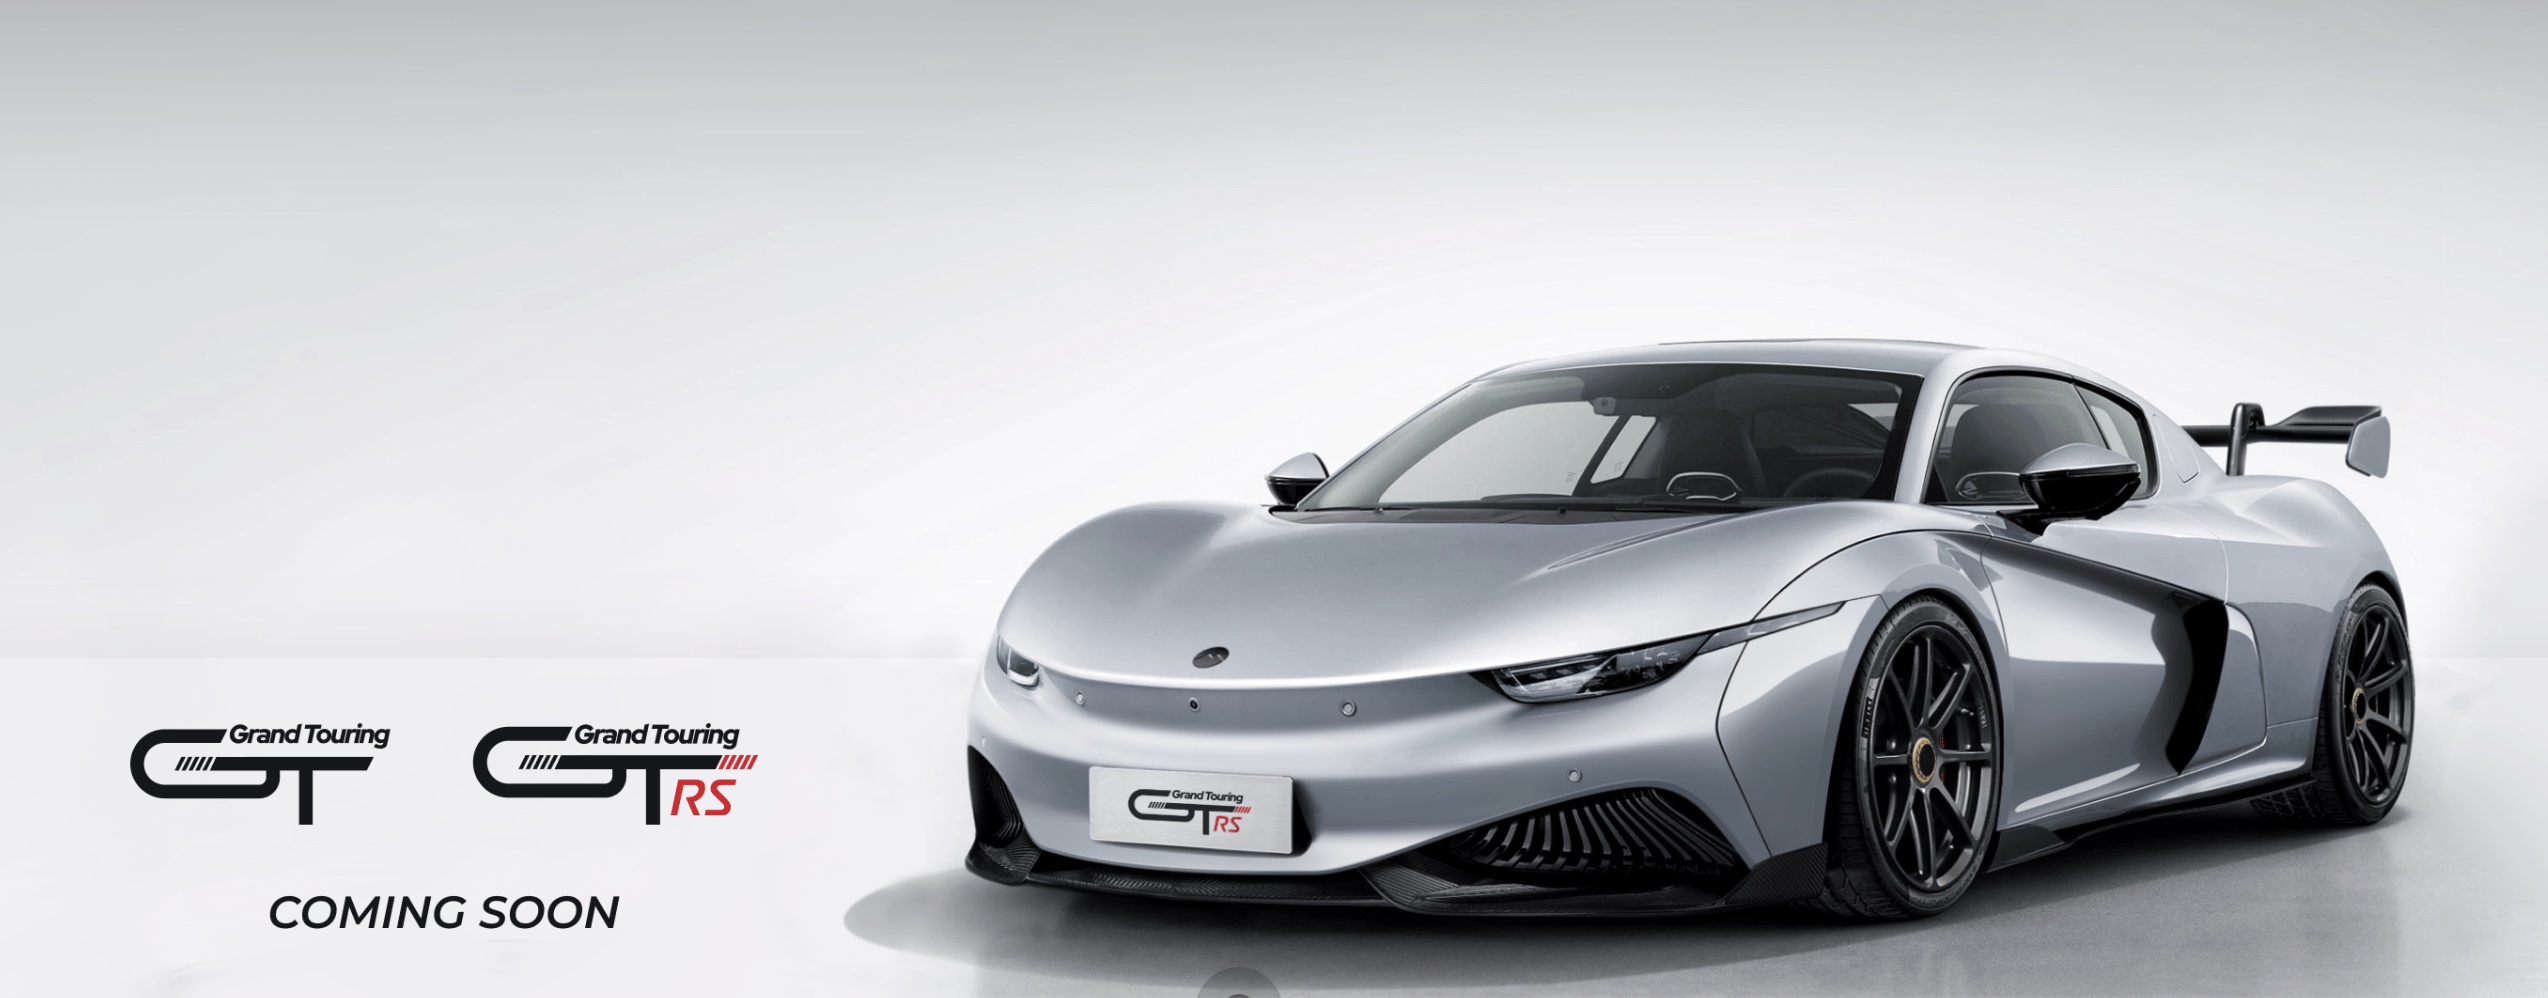 Khác với rất nhiều chiếc xe Trung Quốc, GT không sao chép rõ ràng thiết kế của bất kỳ thương hiệu nổi tiếng nào.